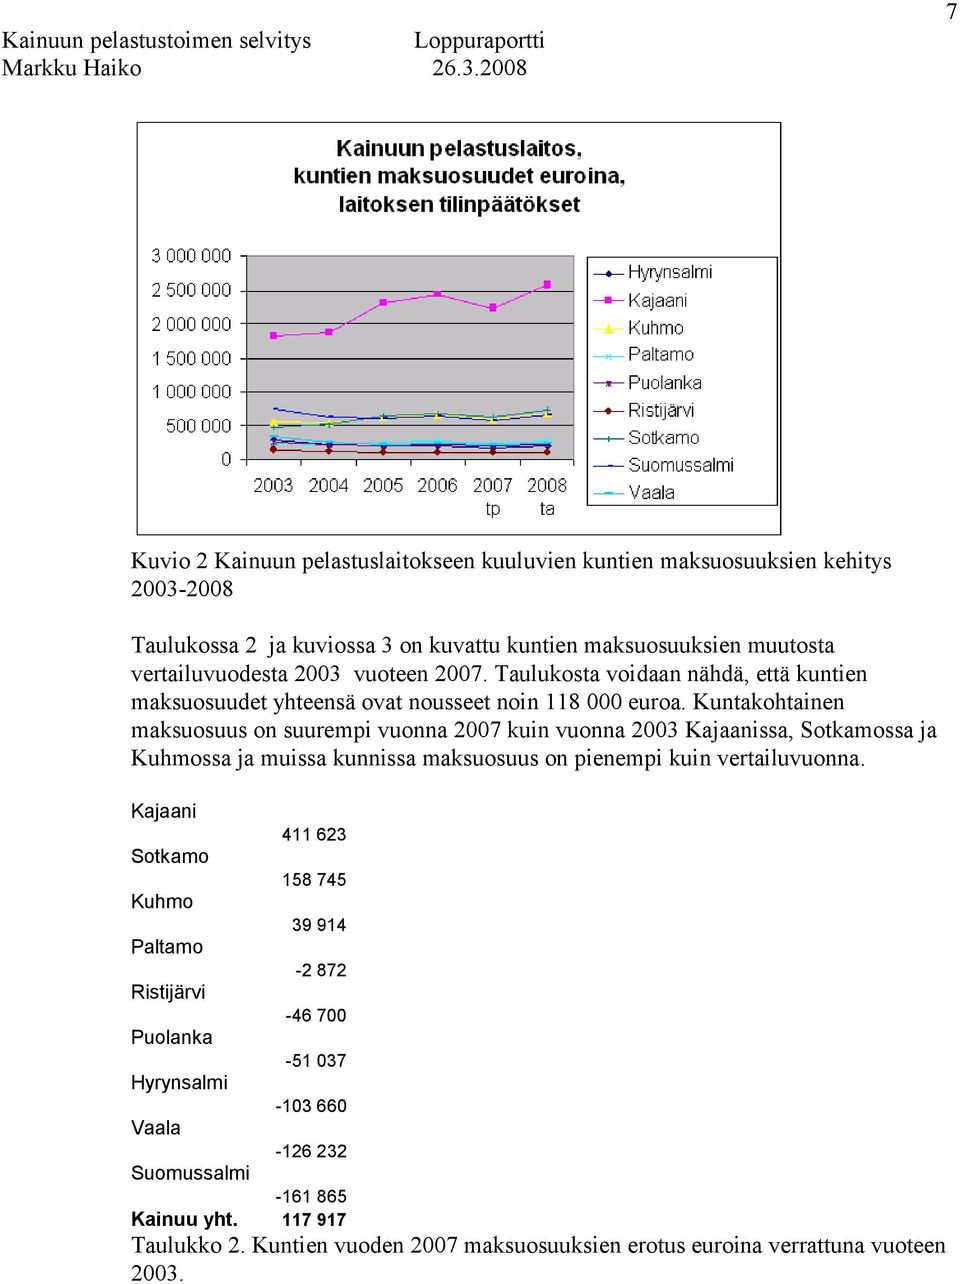 Kuntakohtainen maksuosuus on suurempi vuonna 2007 kuin vuonna 2003 Kajaanissa, Sotkamossa ja Kuhmossa ja muissa kunnissa maksuosuus on pienempi kuin vertailuvuonna.